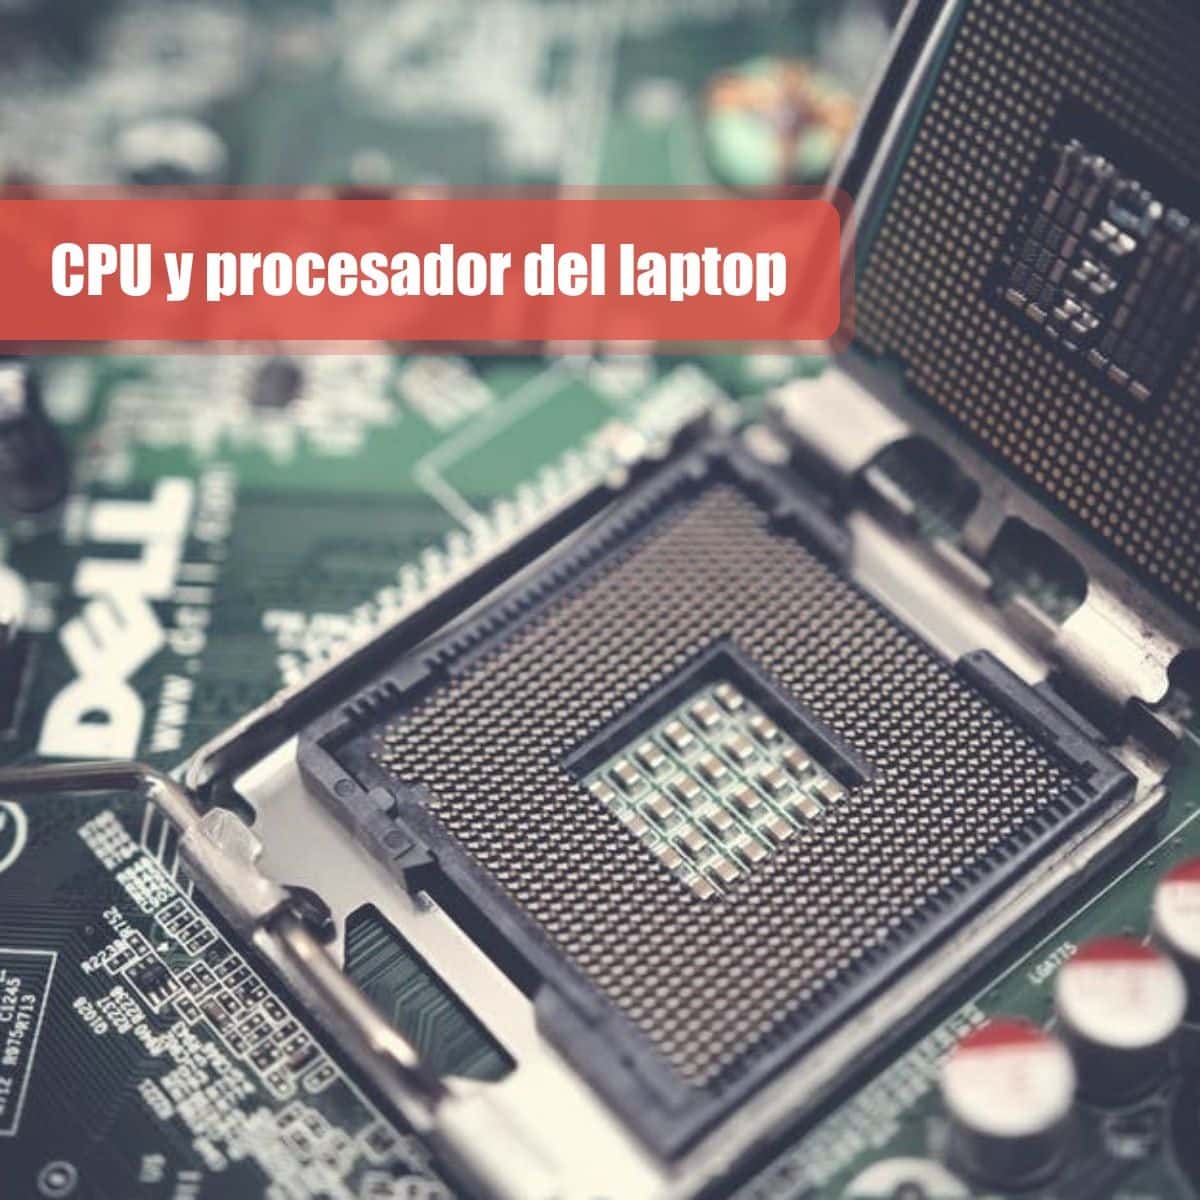 CPU y procesador del laptop para la universidad